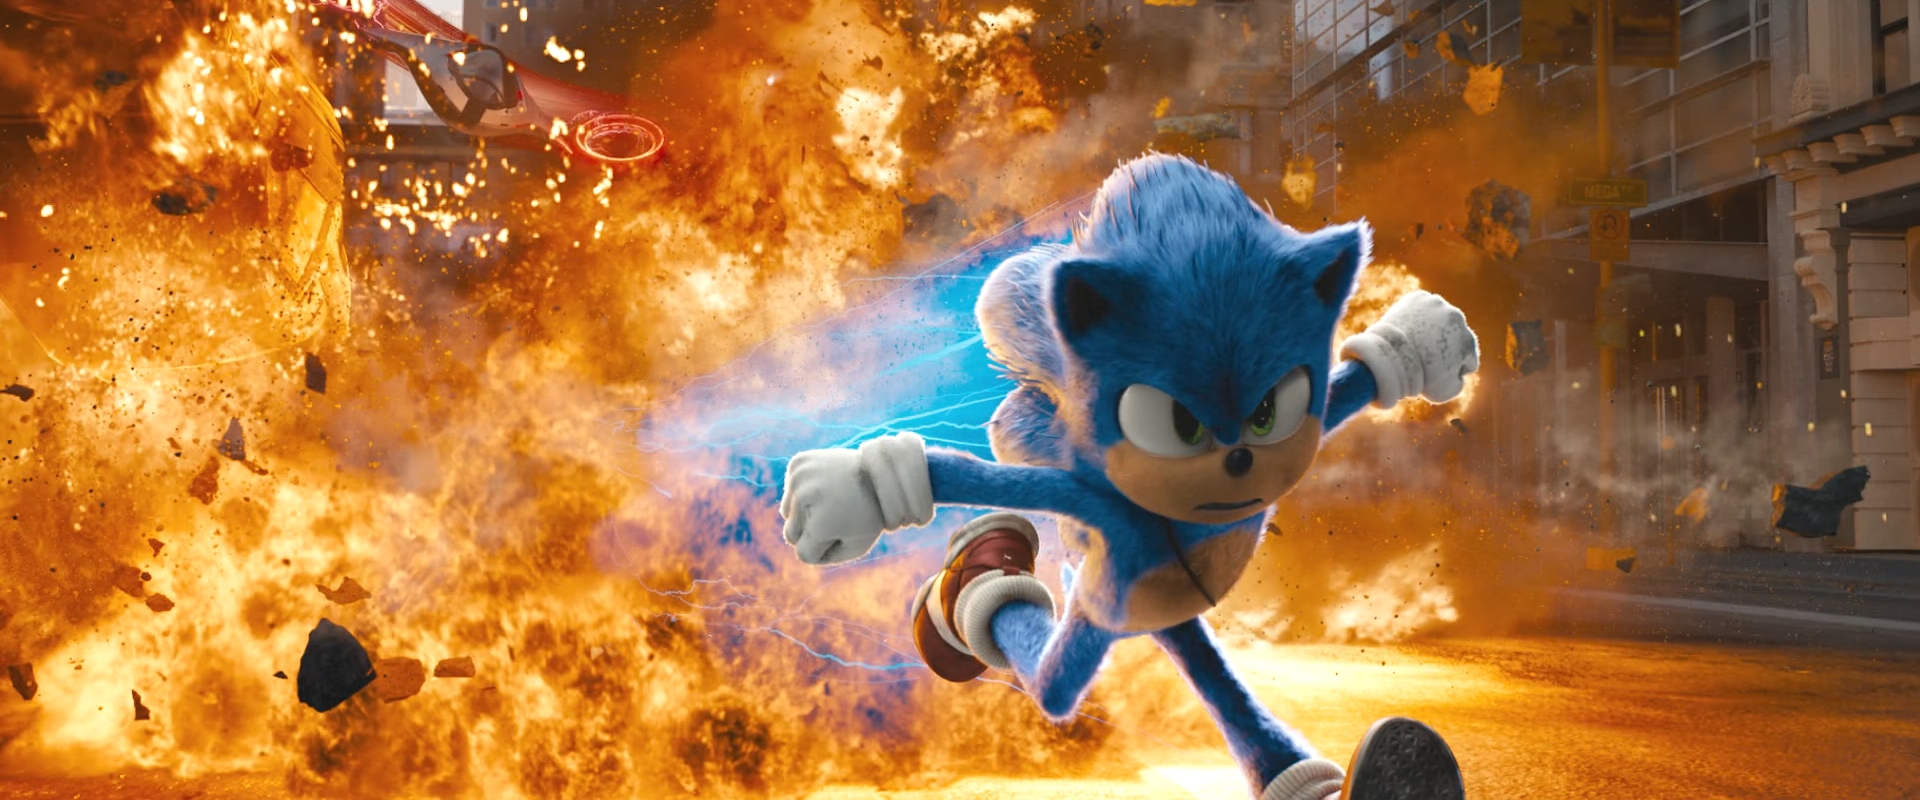 Sonic the Hedgehog 2020-Sonic 12 by GiuseppeDiRosso on DeviantArt